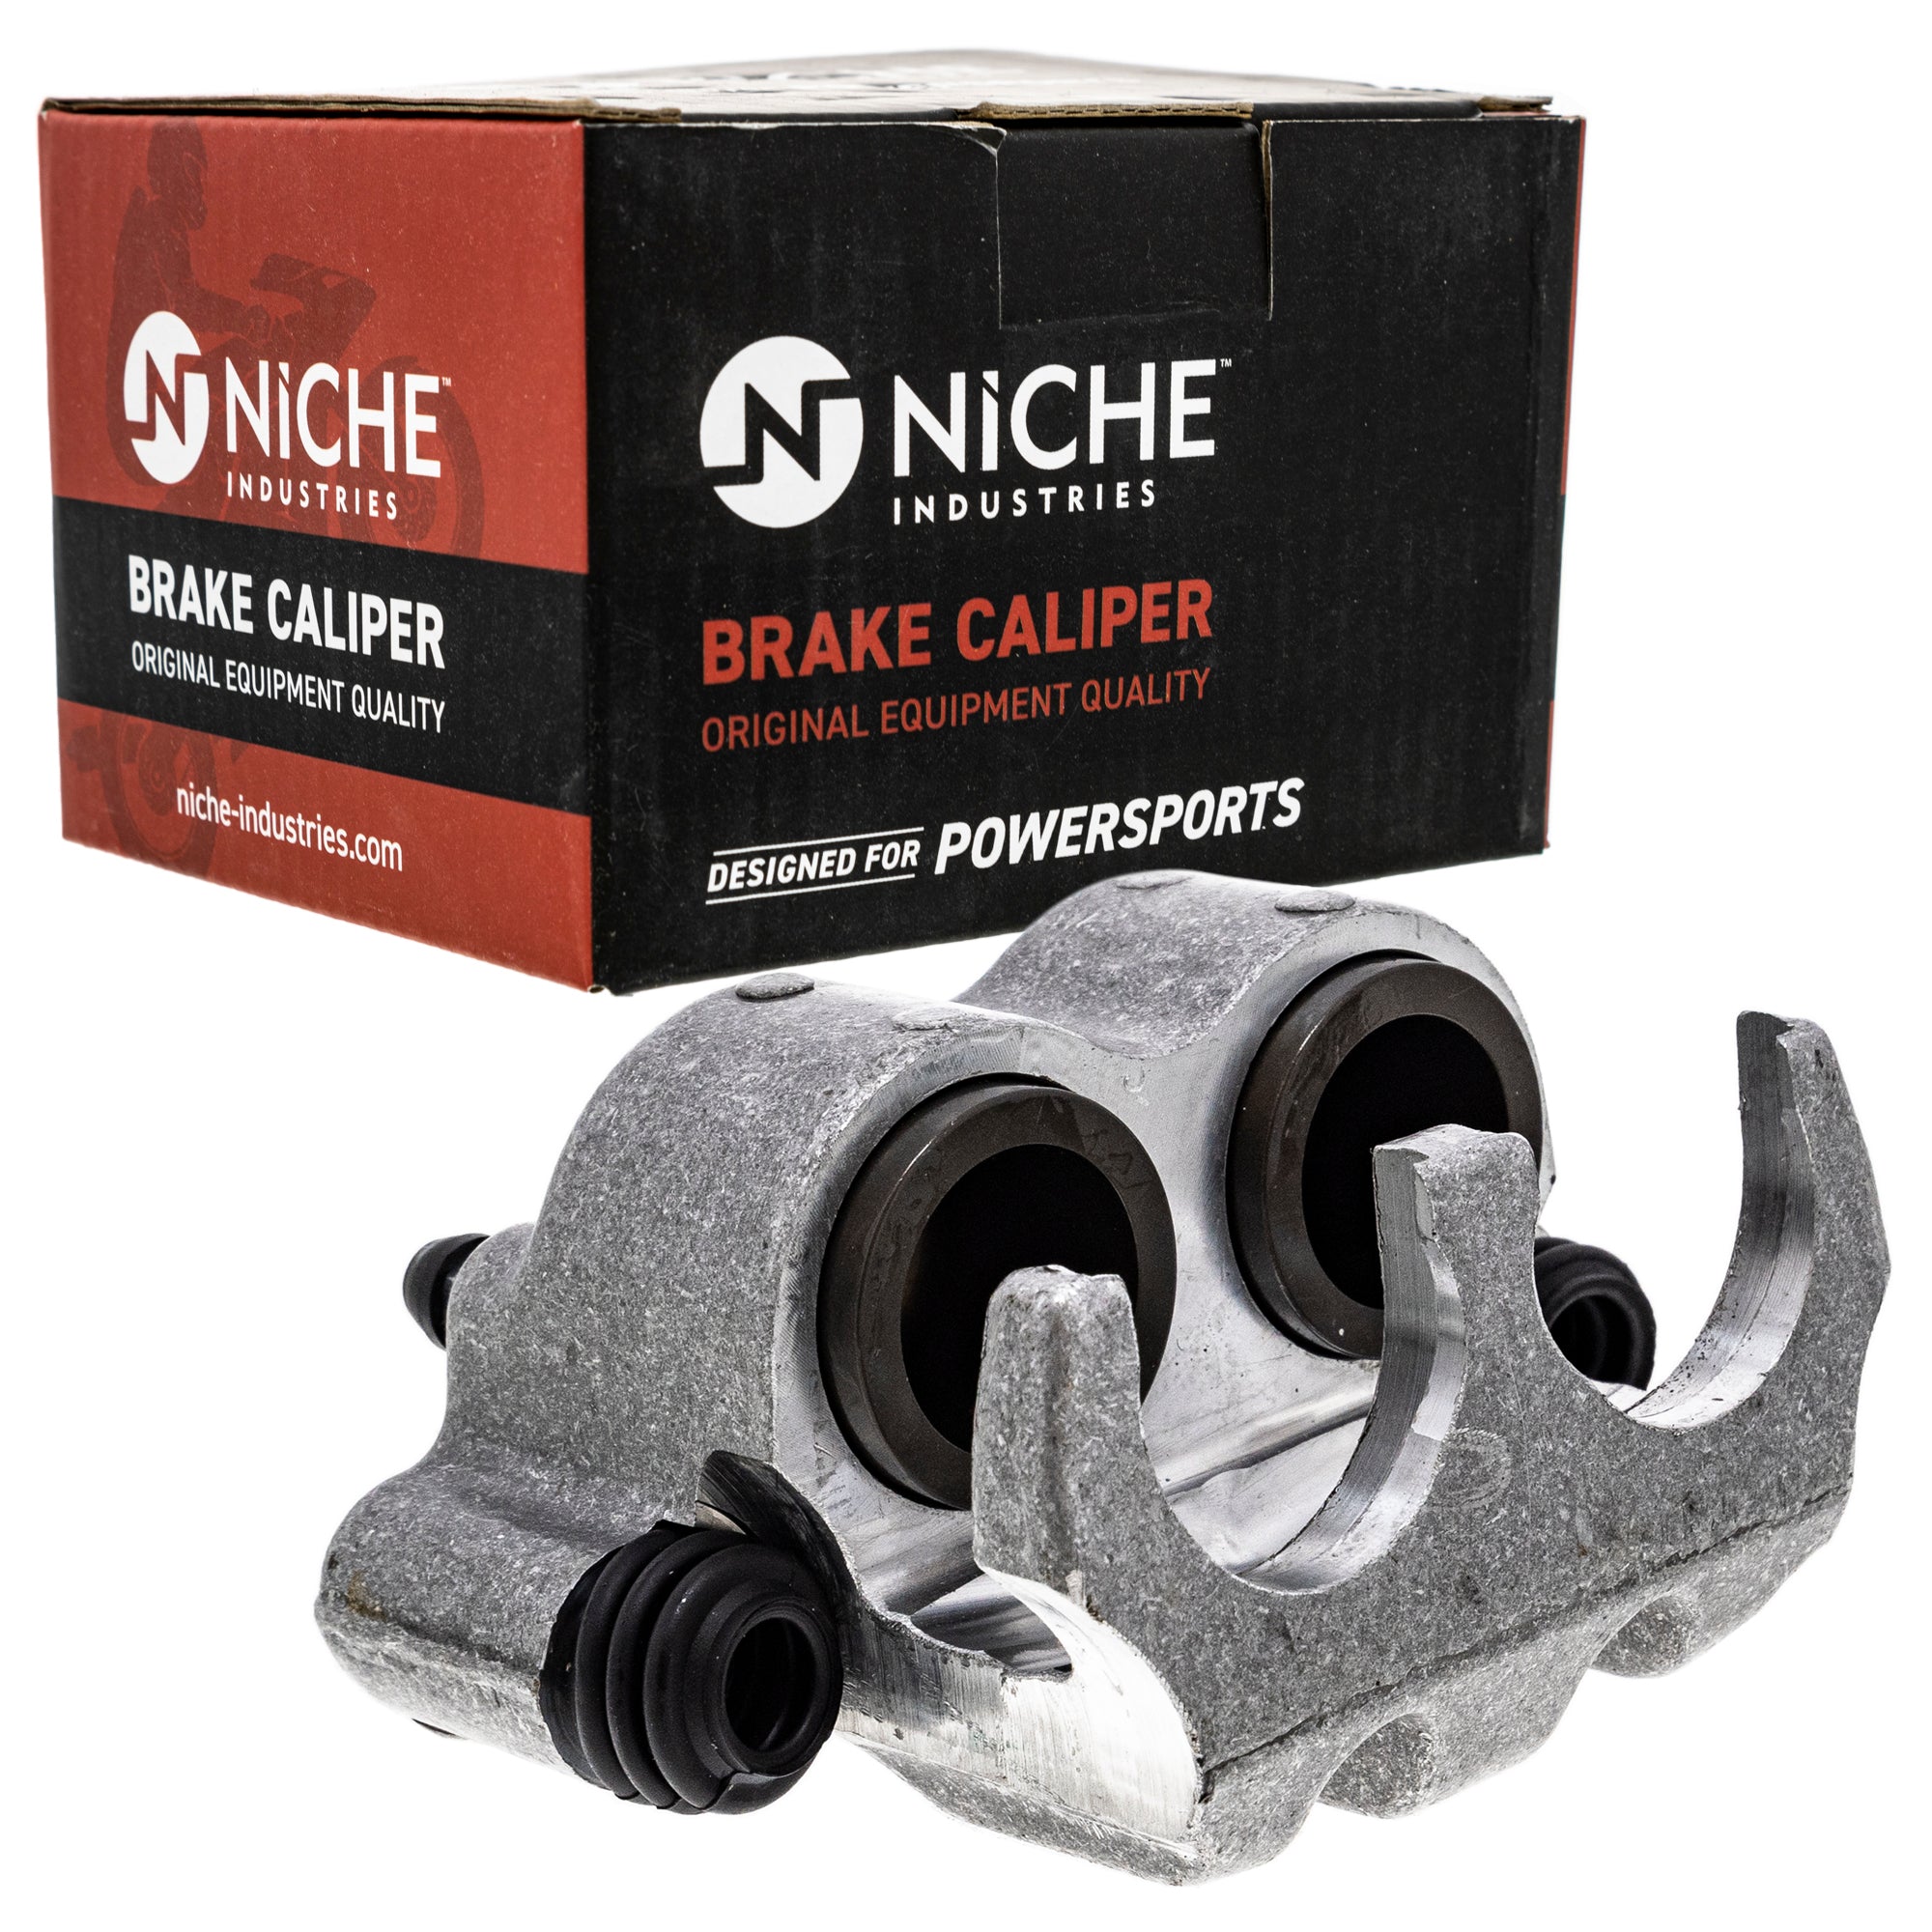 NICHE MK1001053 Brake Caliper Kit